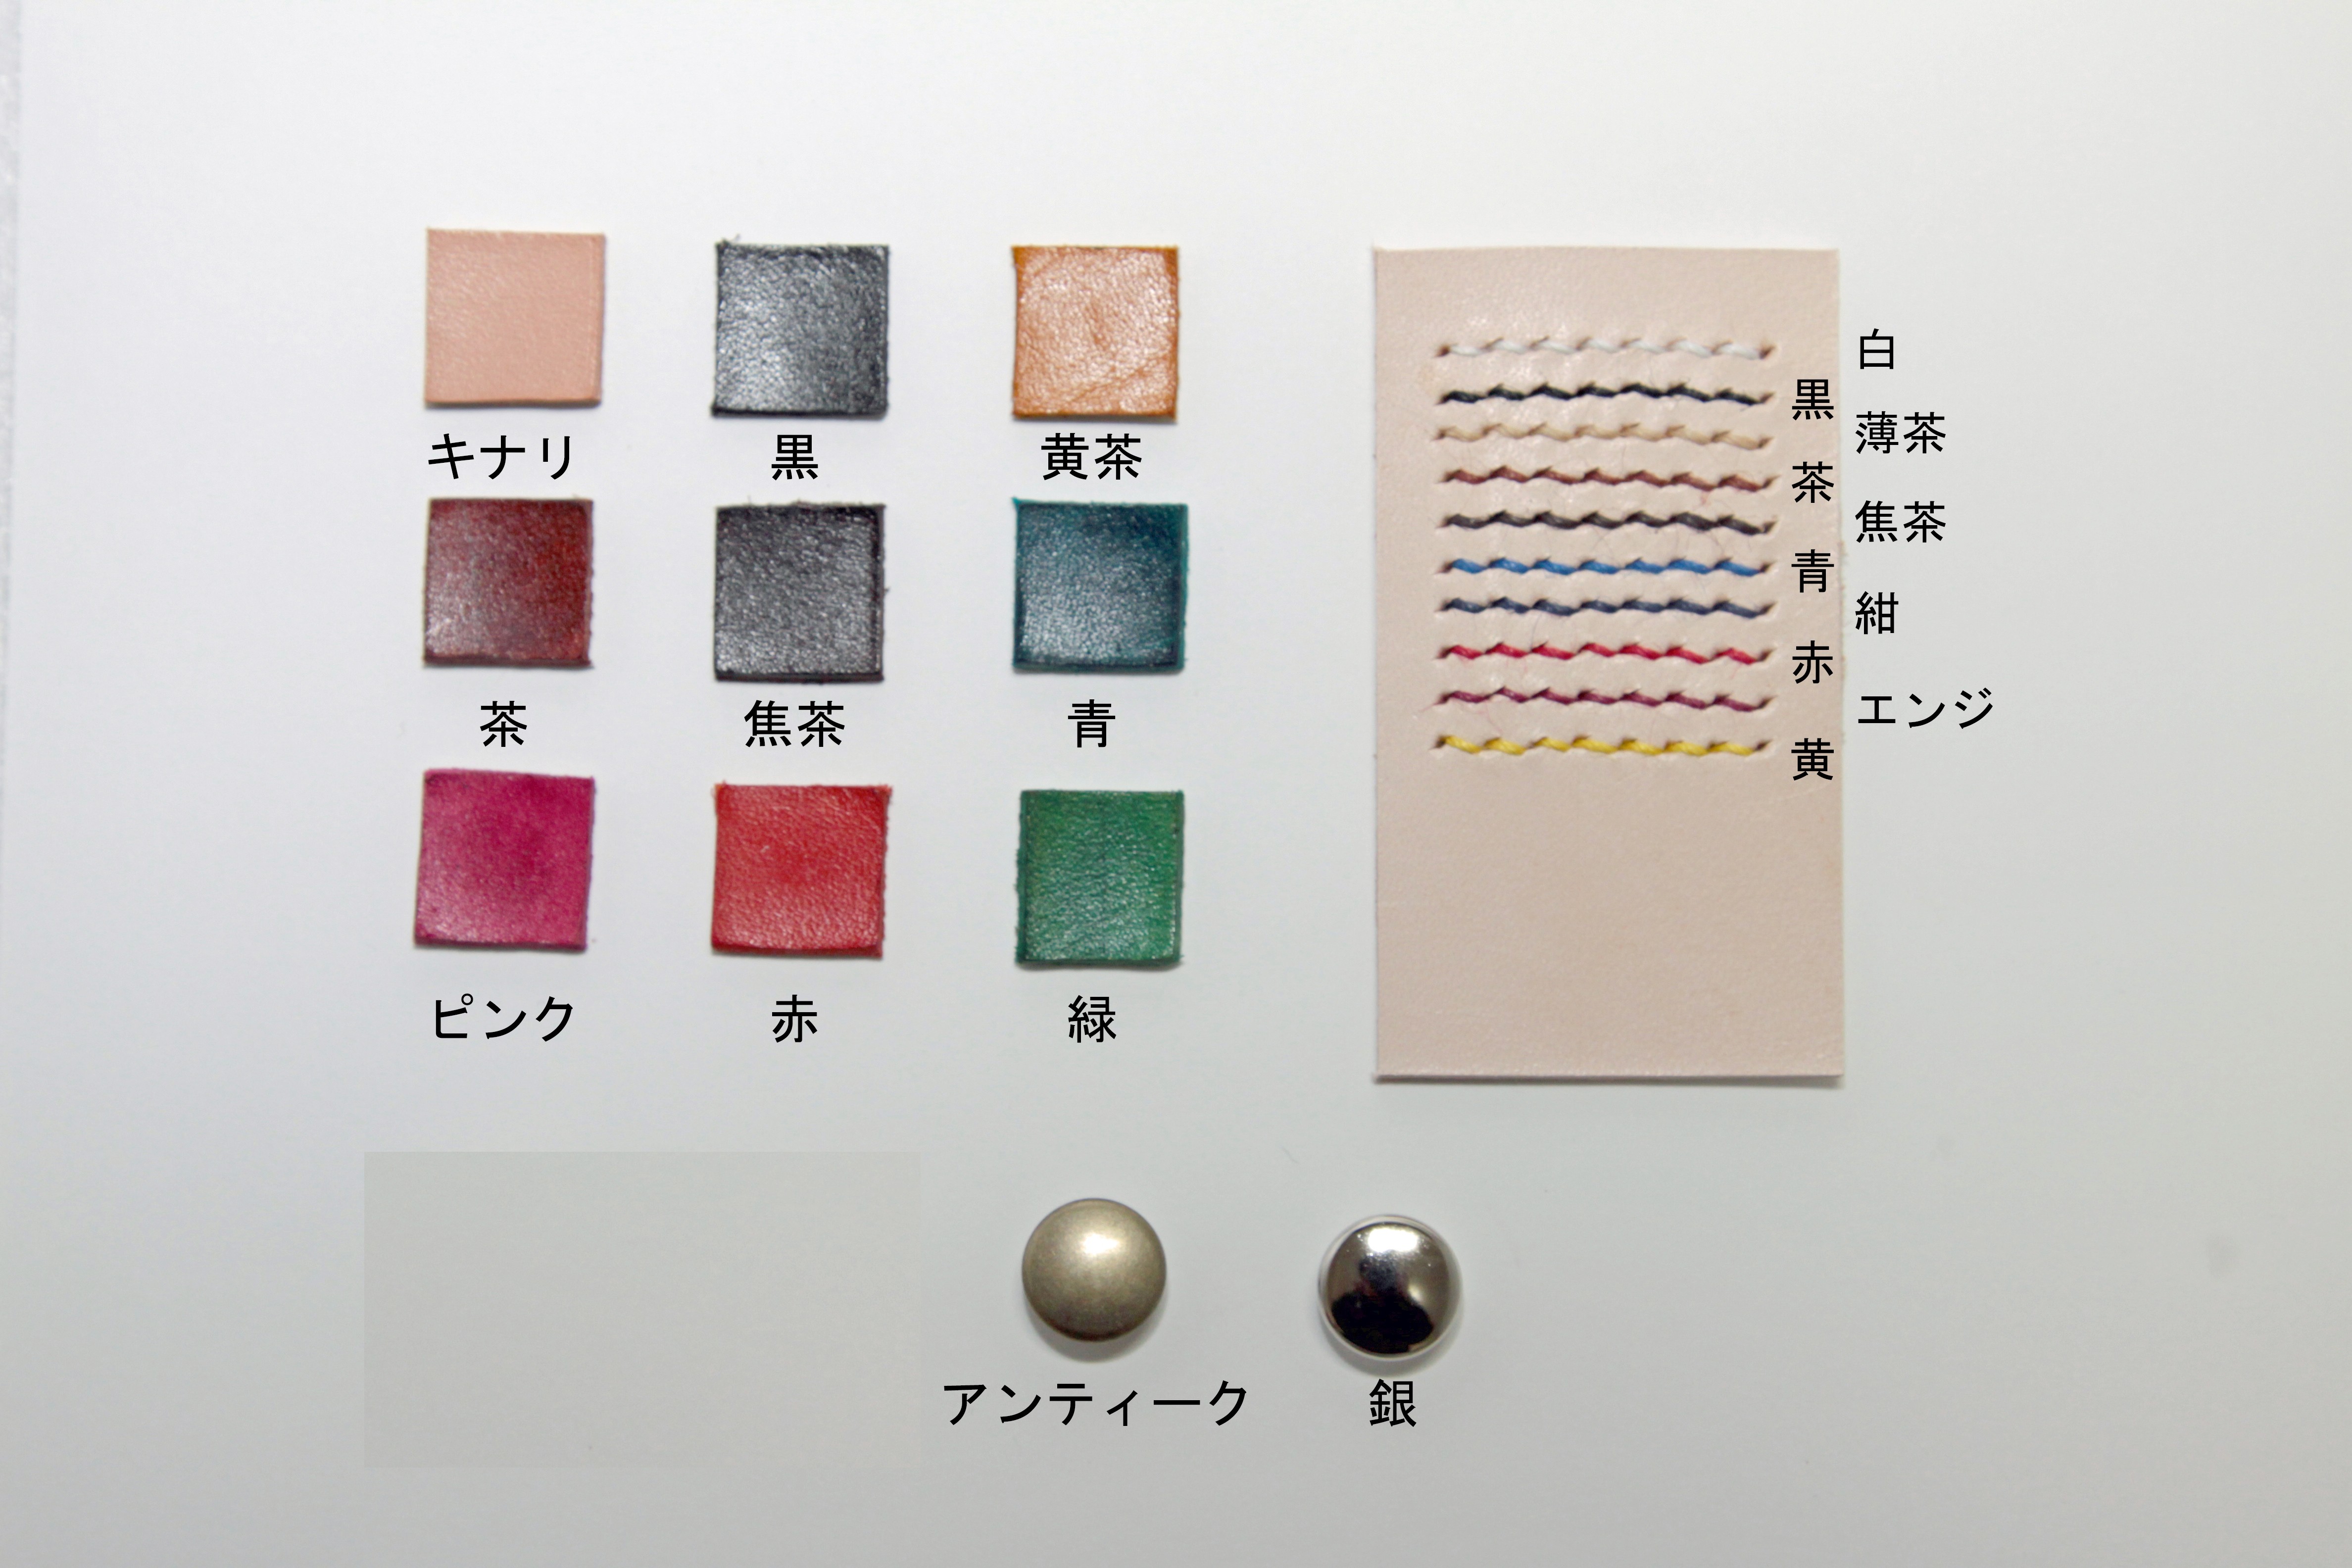 栃木レザー 3連キーホルダー 9色組み合わせ自由 Iichi ハンドメイド クラフト作品 手仕事品の通販